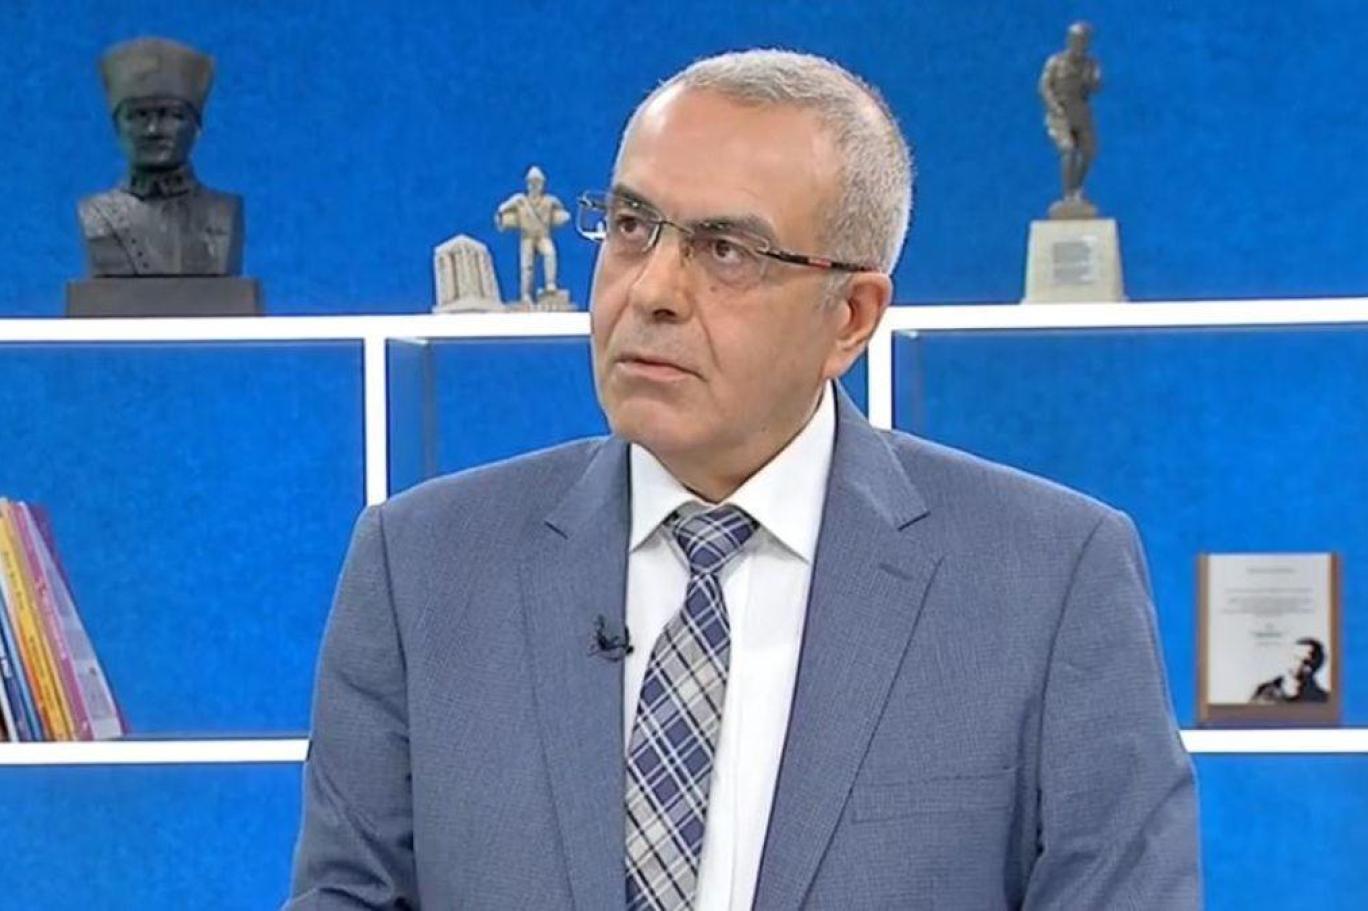 Eski Ülkü Ocakları başkanı Aldemir: Bir mafya grubu üzerinden Kılıçdaroğlu'na hamle yapılacağıyla ilgili duyumlarım var